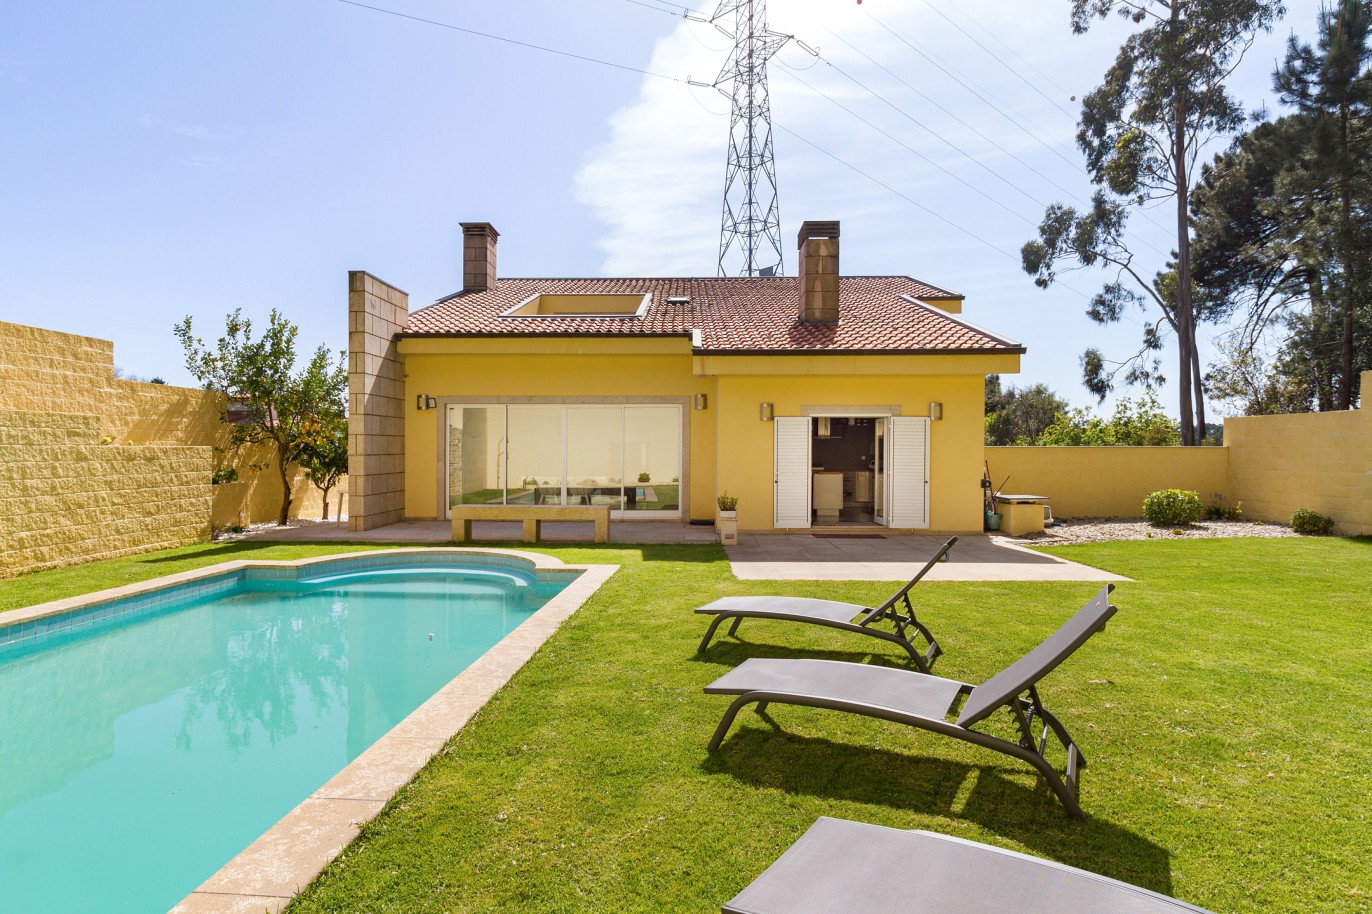 Villa de 4+1 dormitorios con piscina y jardín, en venta, Perosinho, V. N. Gaia, Portugal_220764